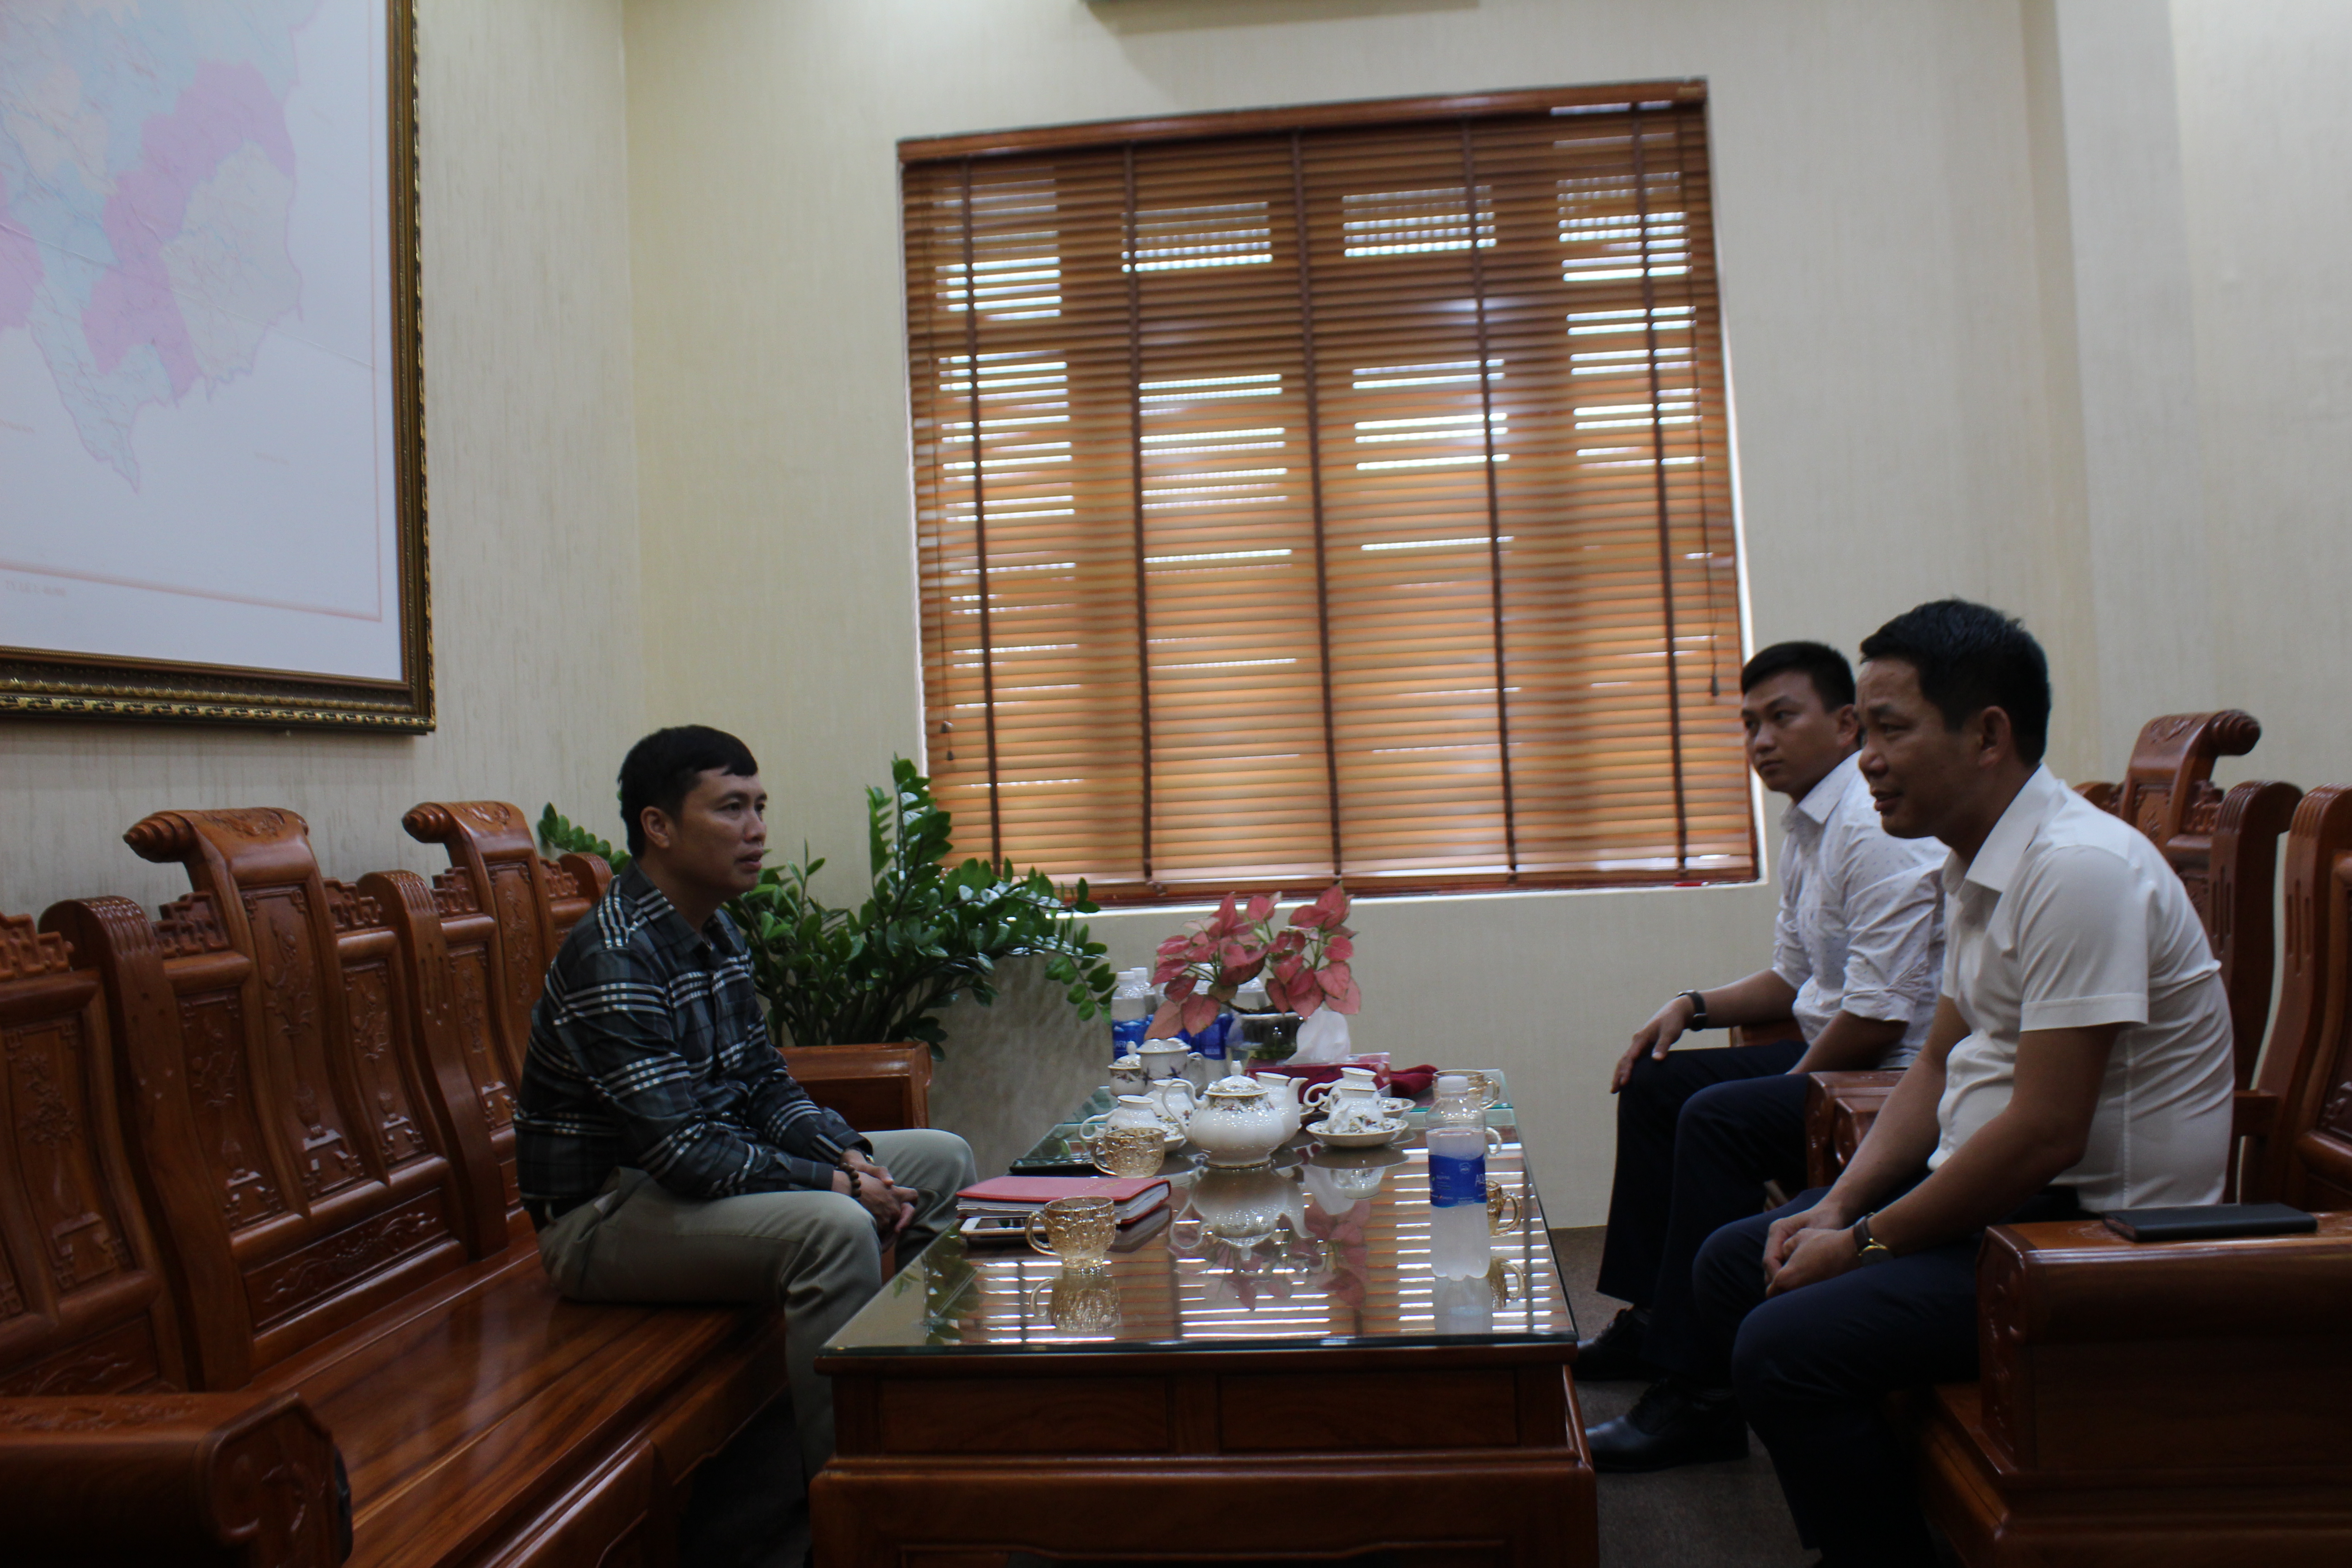 Ông Triệu Minh Xiết - Phó Bí thư Thường trực Huyện ủy Mường Lát trao đổi với phóng viên về tình hình phát triển kinh tế - xã hội trên địa bàn huyện trong 6 tháng đầu năm 2022.